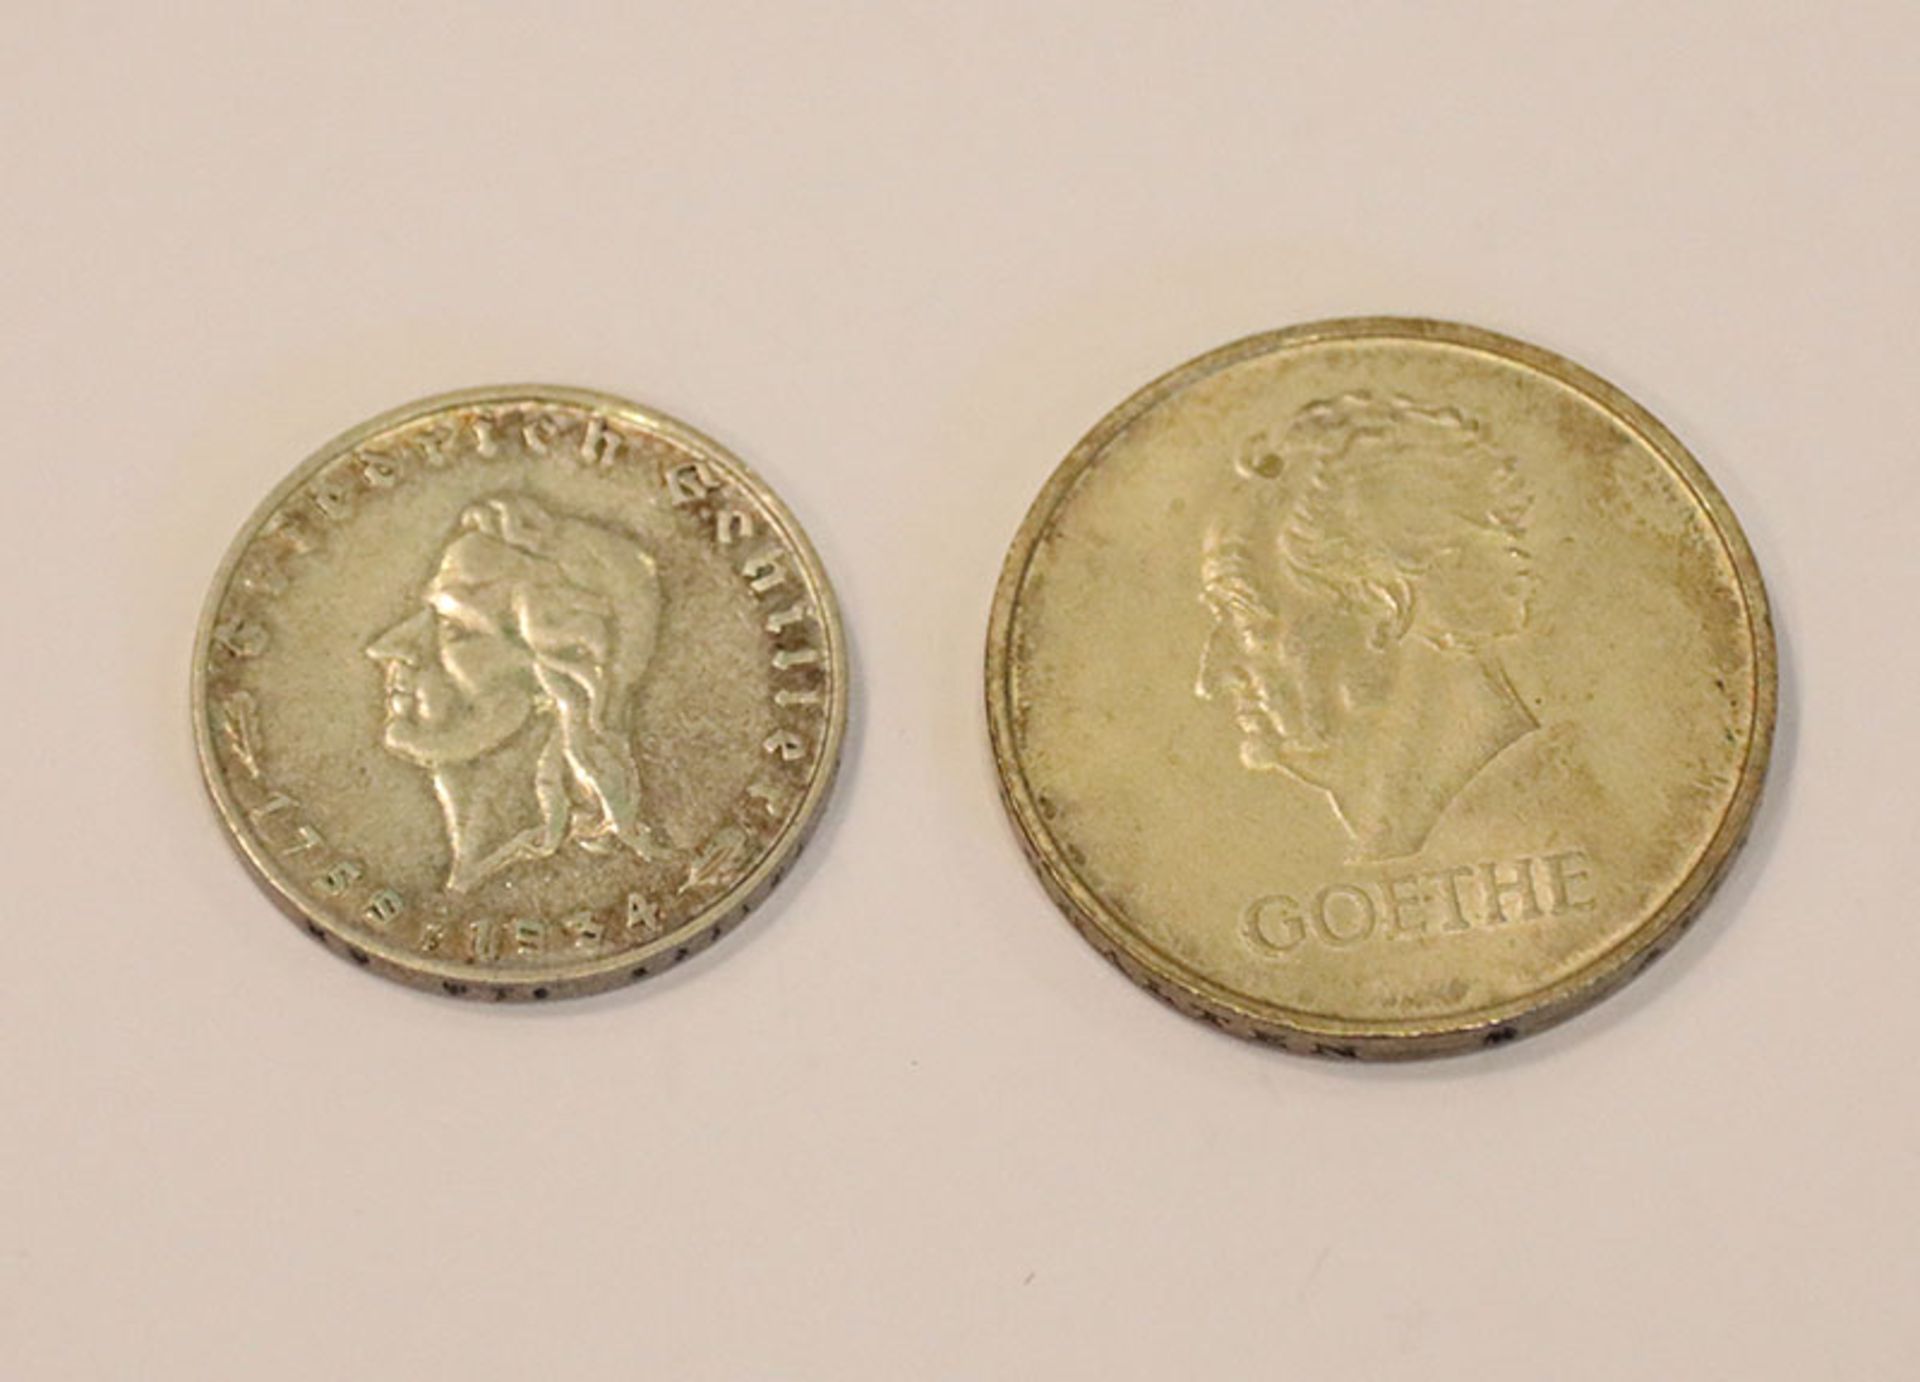 2 Silbermünzen: 2 Reichsmark Schiller F und 3 Reichsmark Goethe D